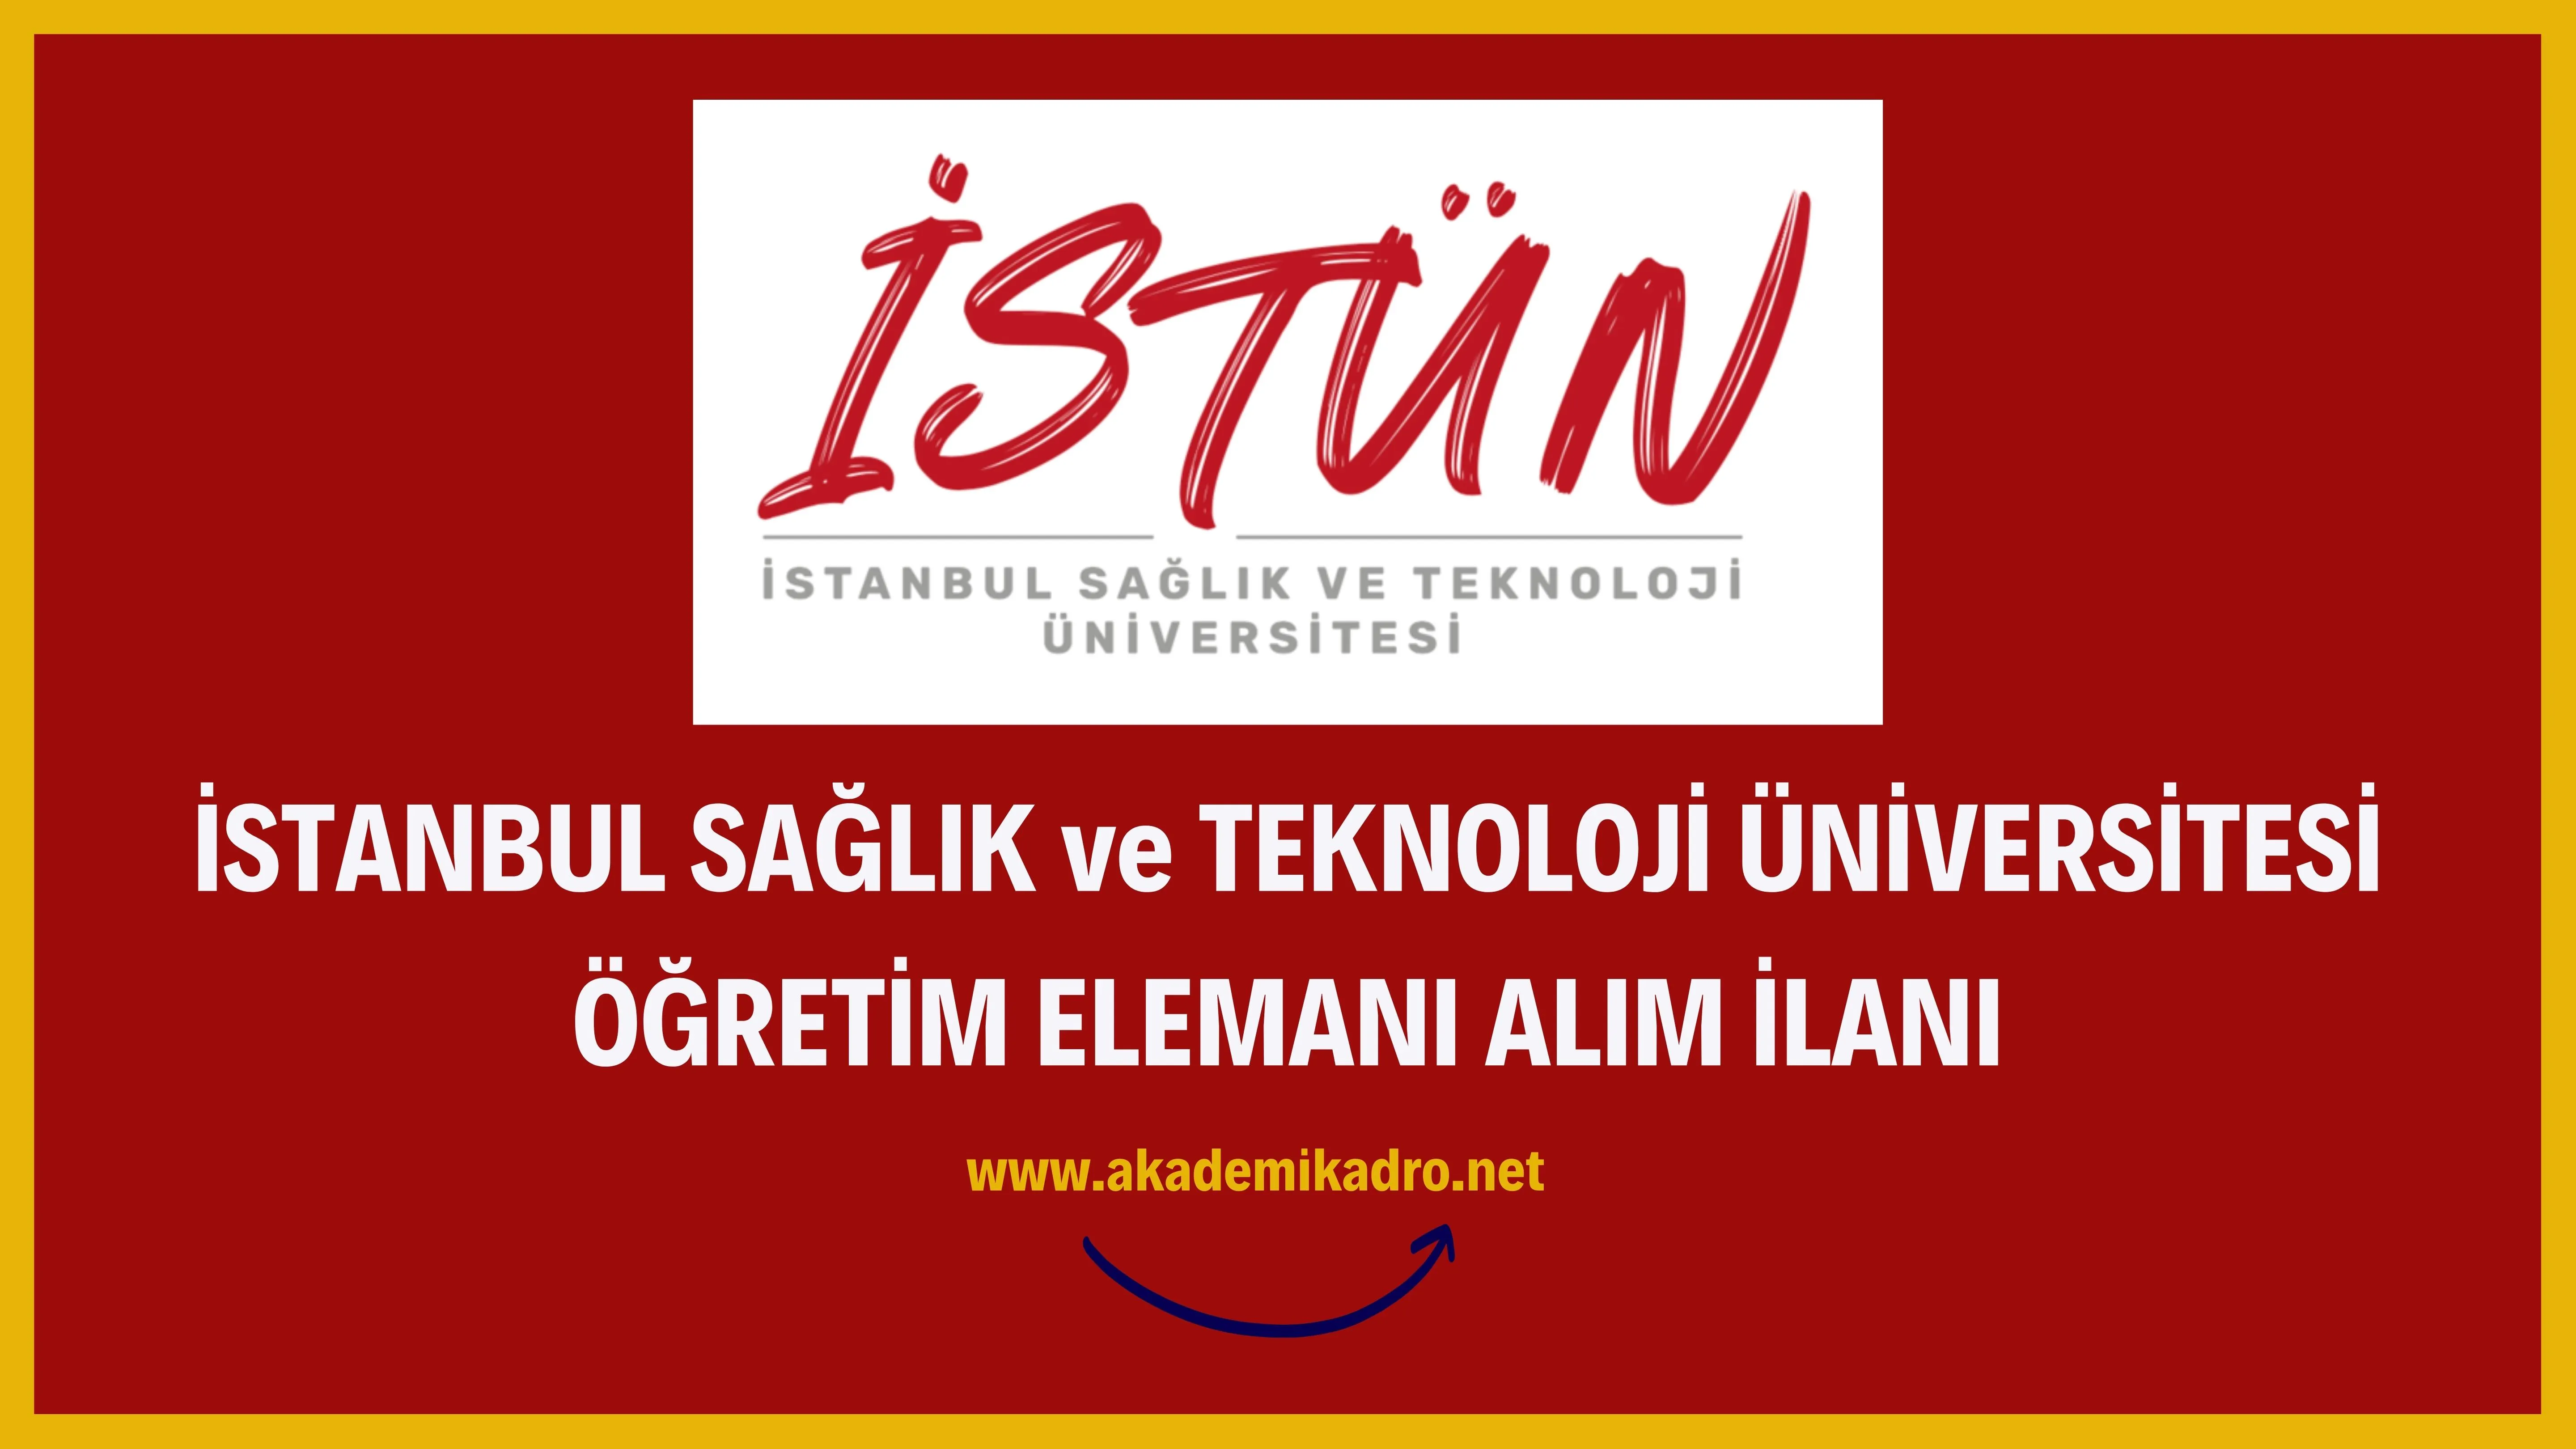 İstanbul Sağlık ve Teknoloji Üniversitesi 9 Öğretim görevlisi,17 Araştırma görevlisi ve 76 Öğretim üyesi alacak.